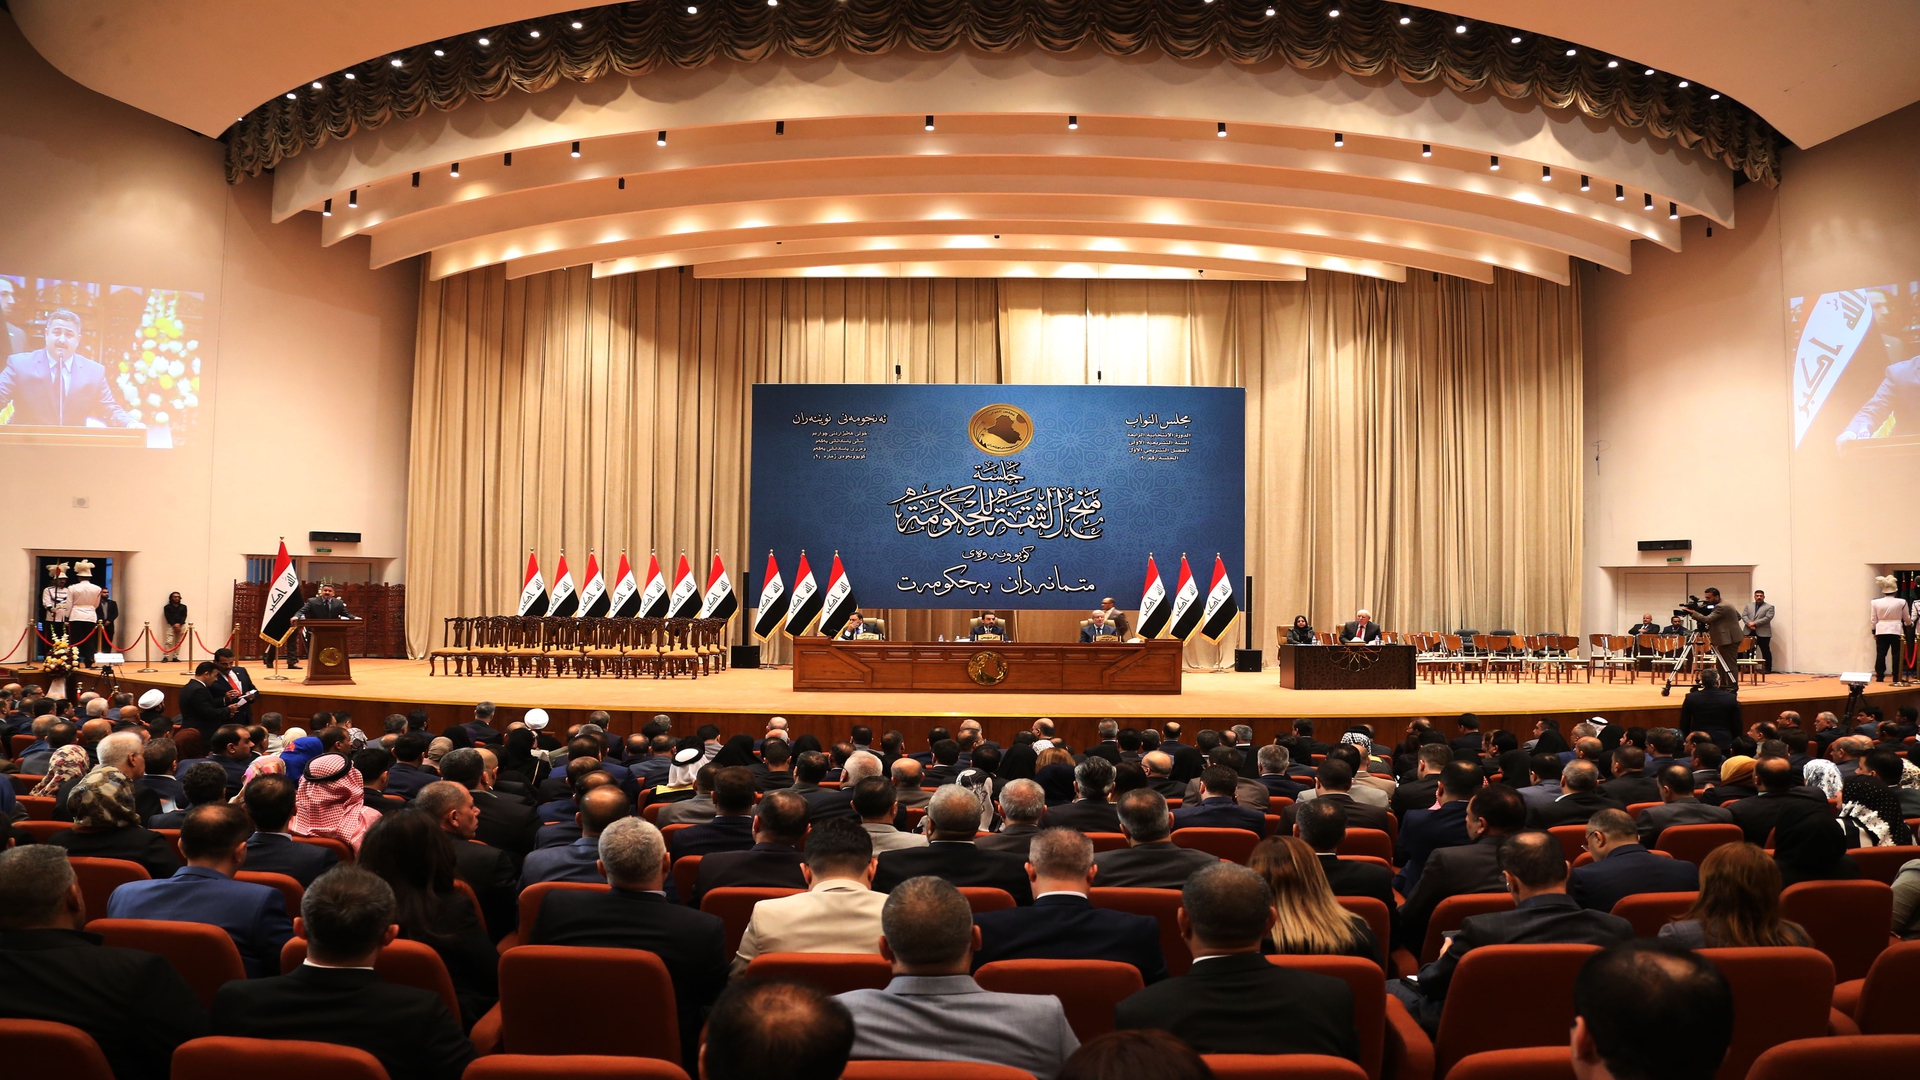 البرلمان العراقي يوصد ابوابه الليلة والخلافات تدب بفقرتين في الموازنة